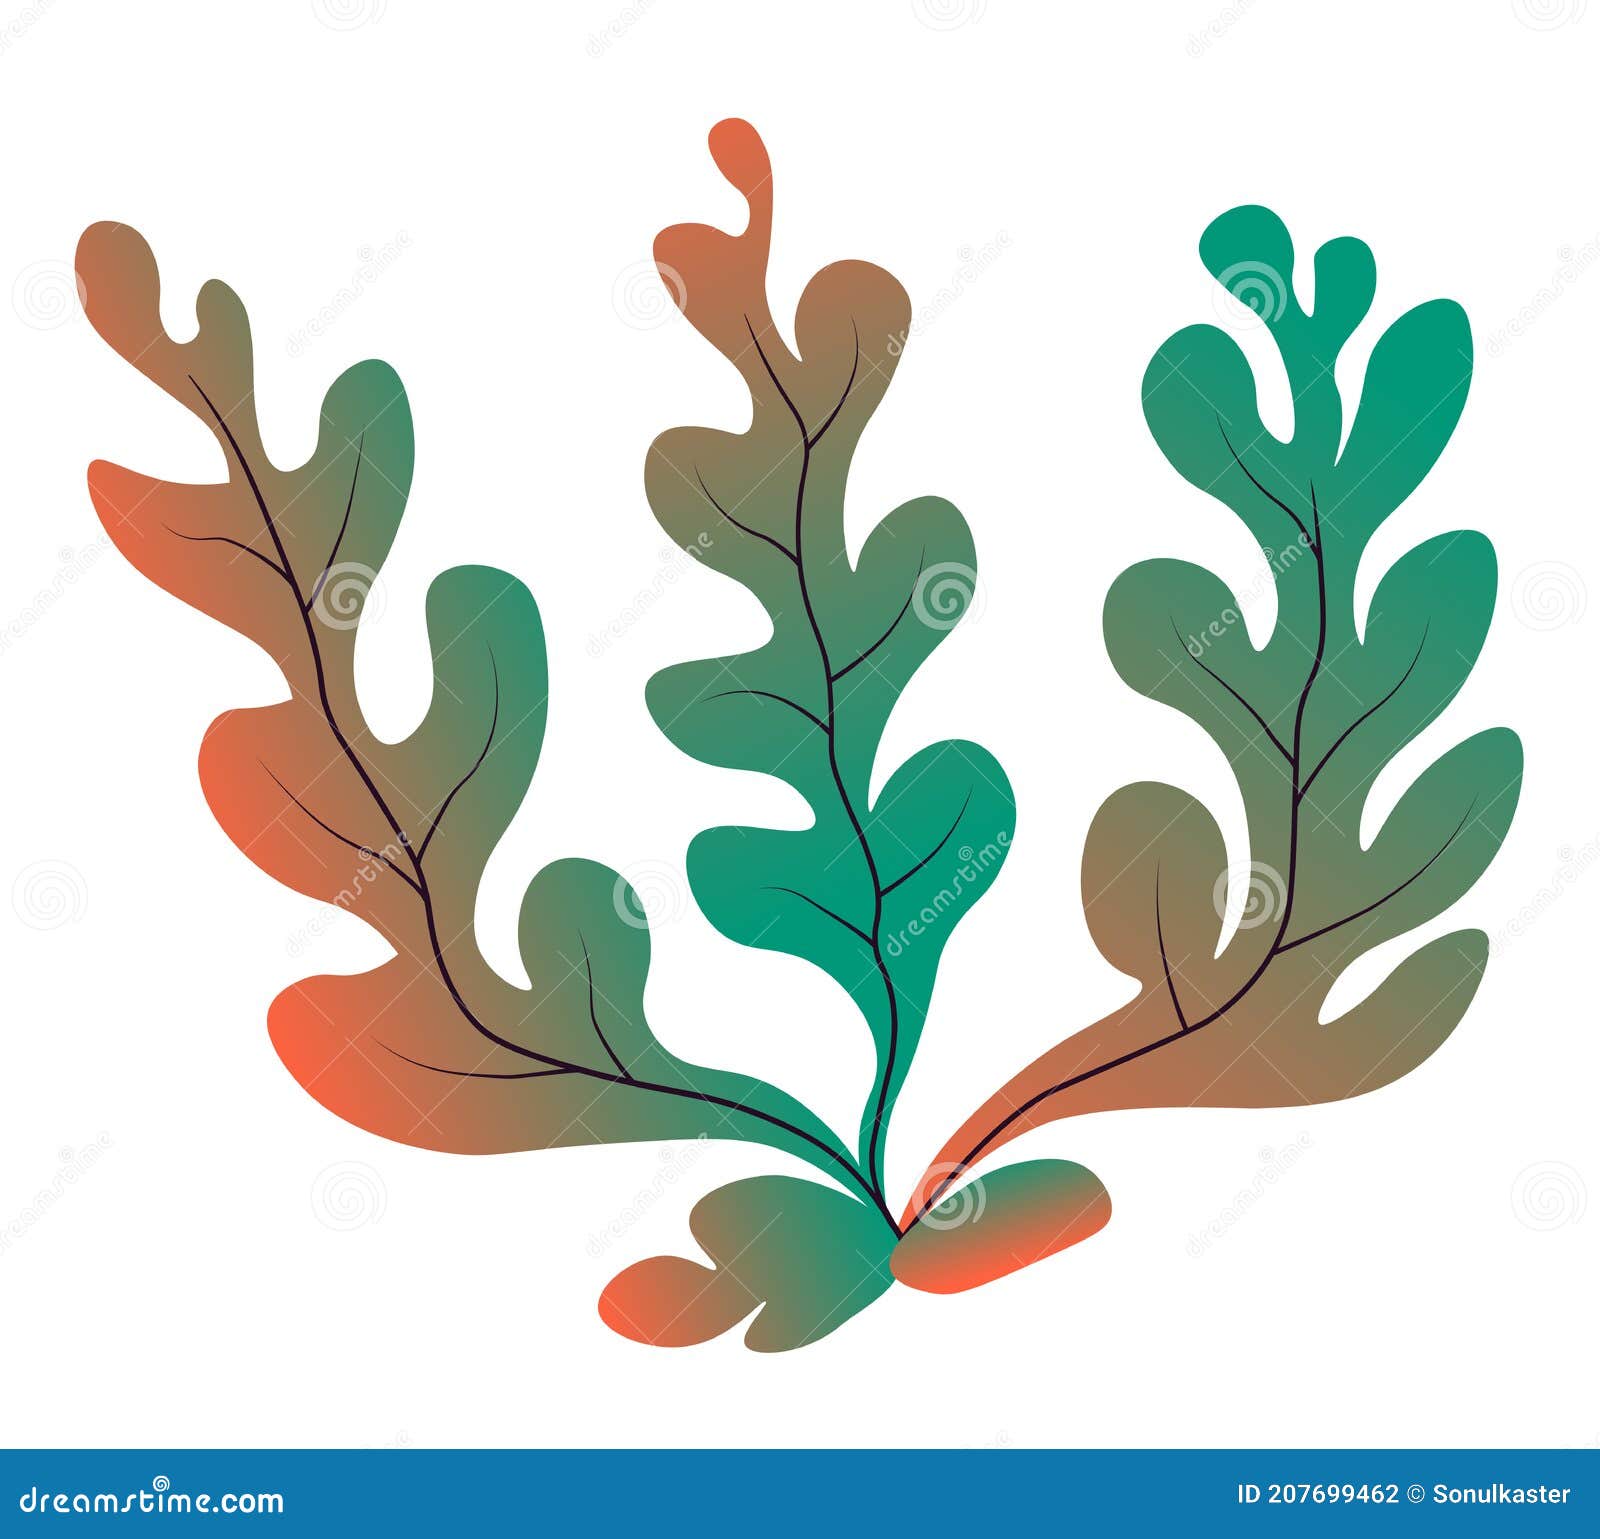 Marine Botany and Seaweed, Decor for Aquarium Stock Illustration